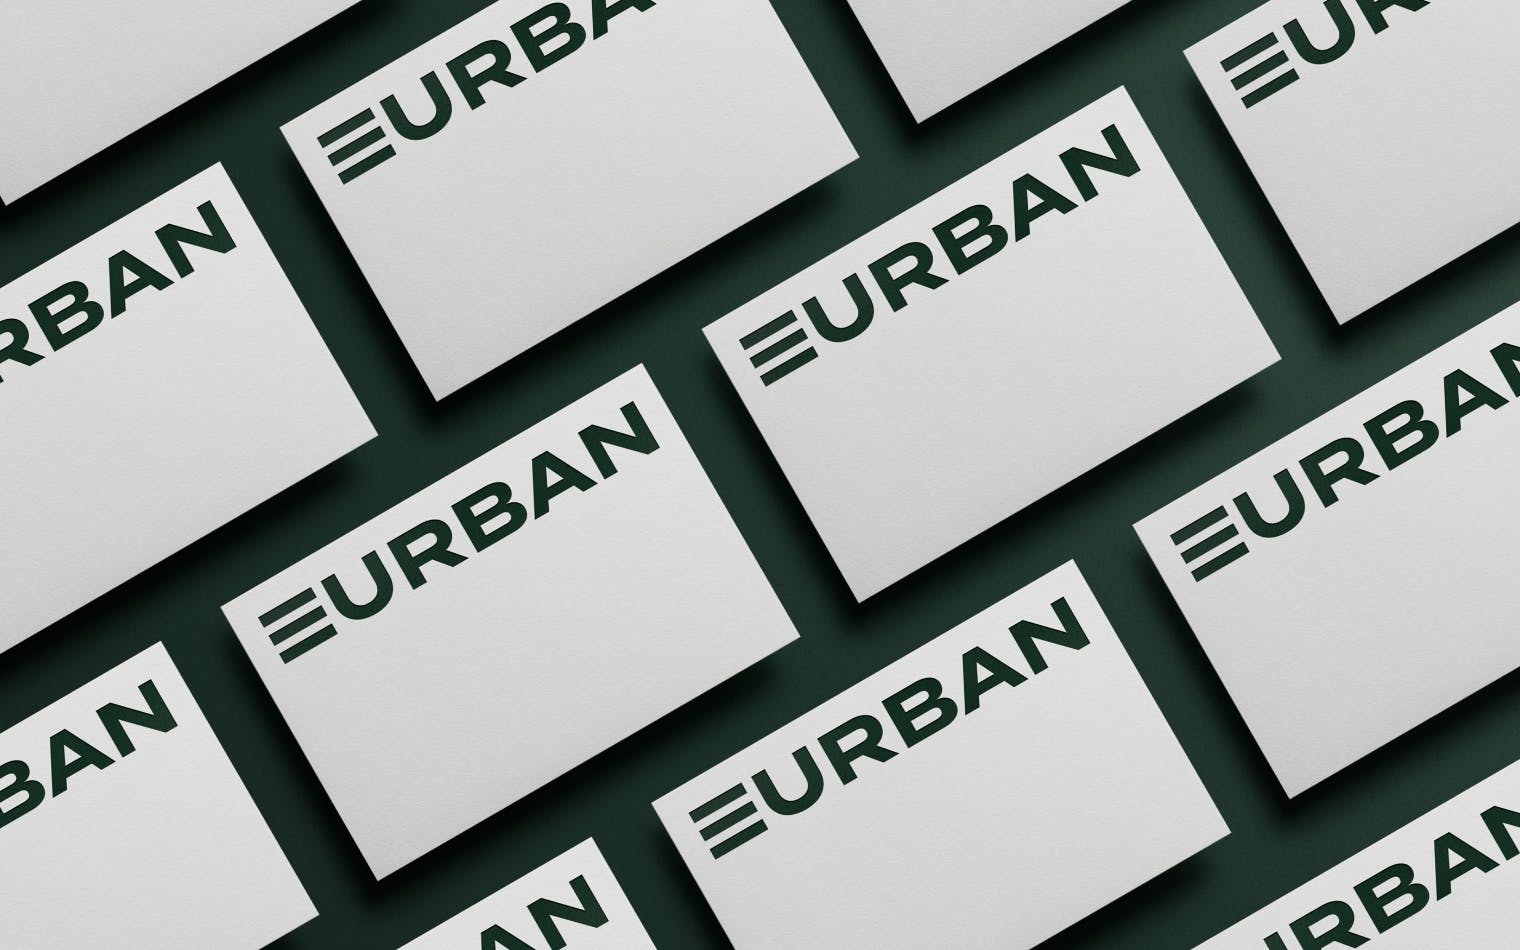 Eurban | Steve Edge Design